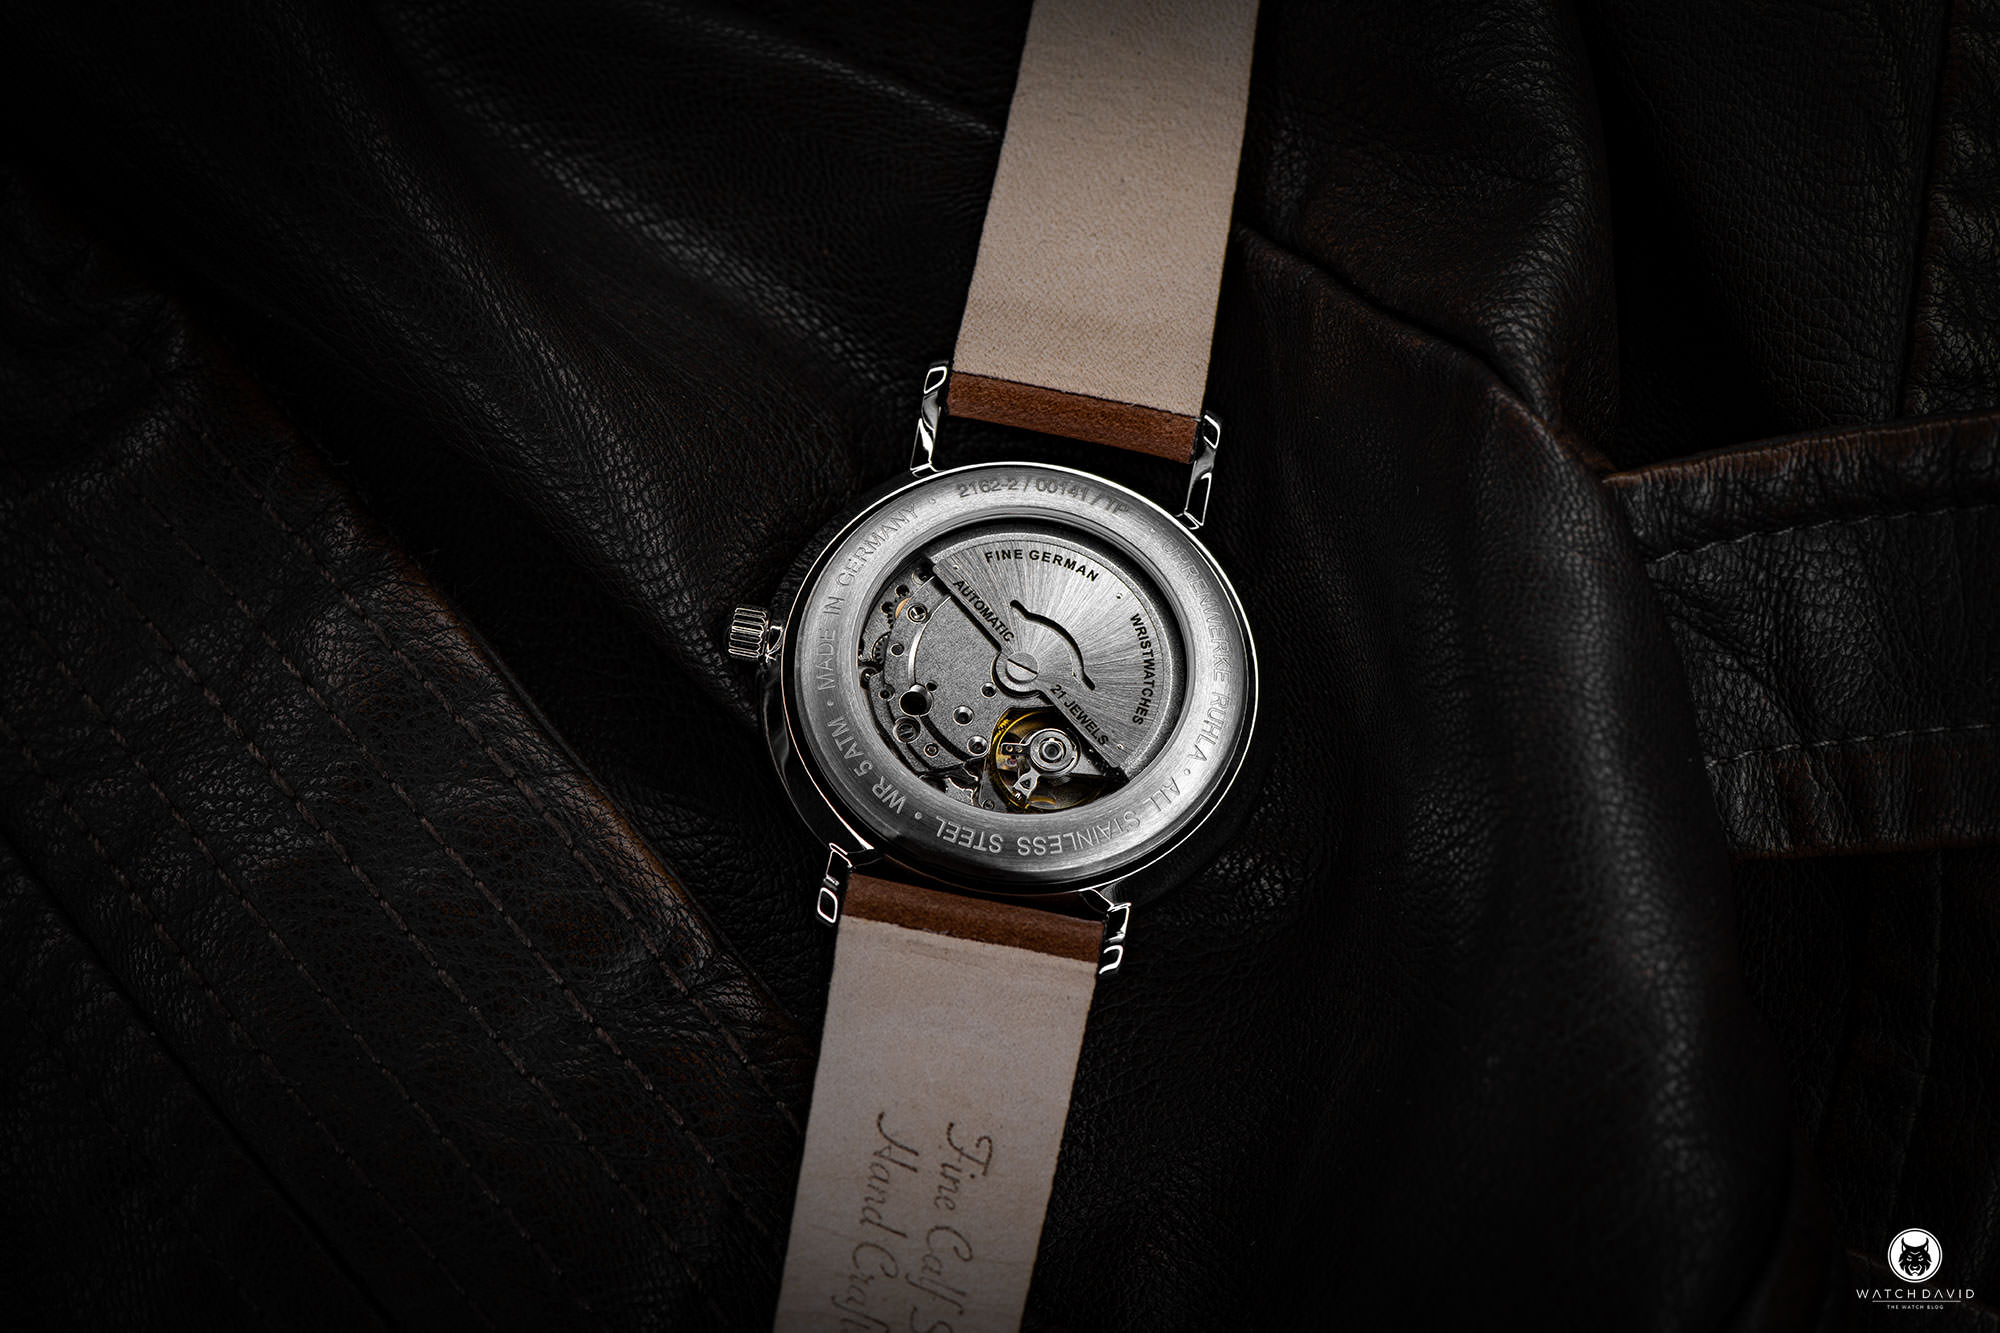 Bauhaus Automatic Watch 2162 Review WATCHDAVID® –